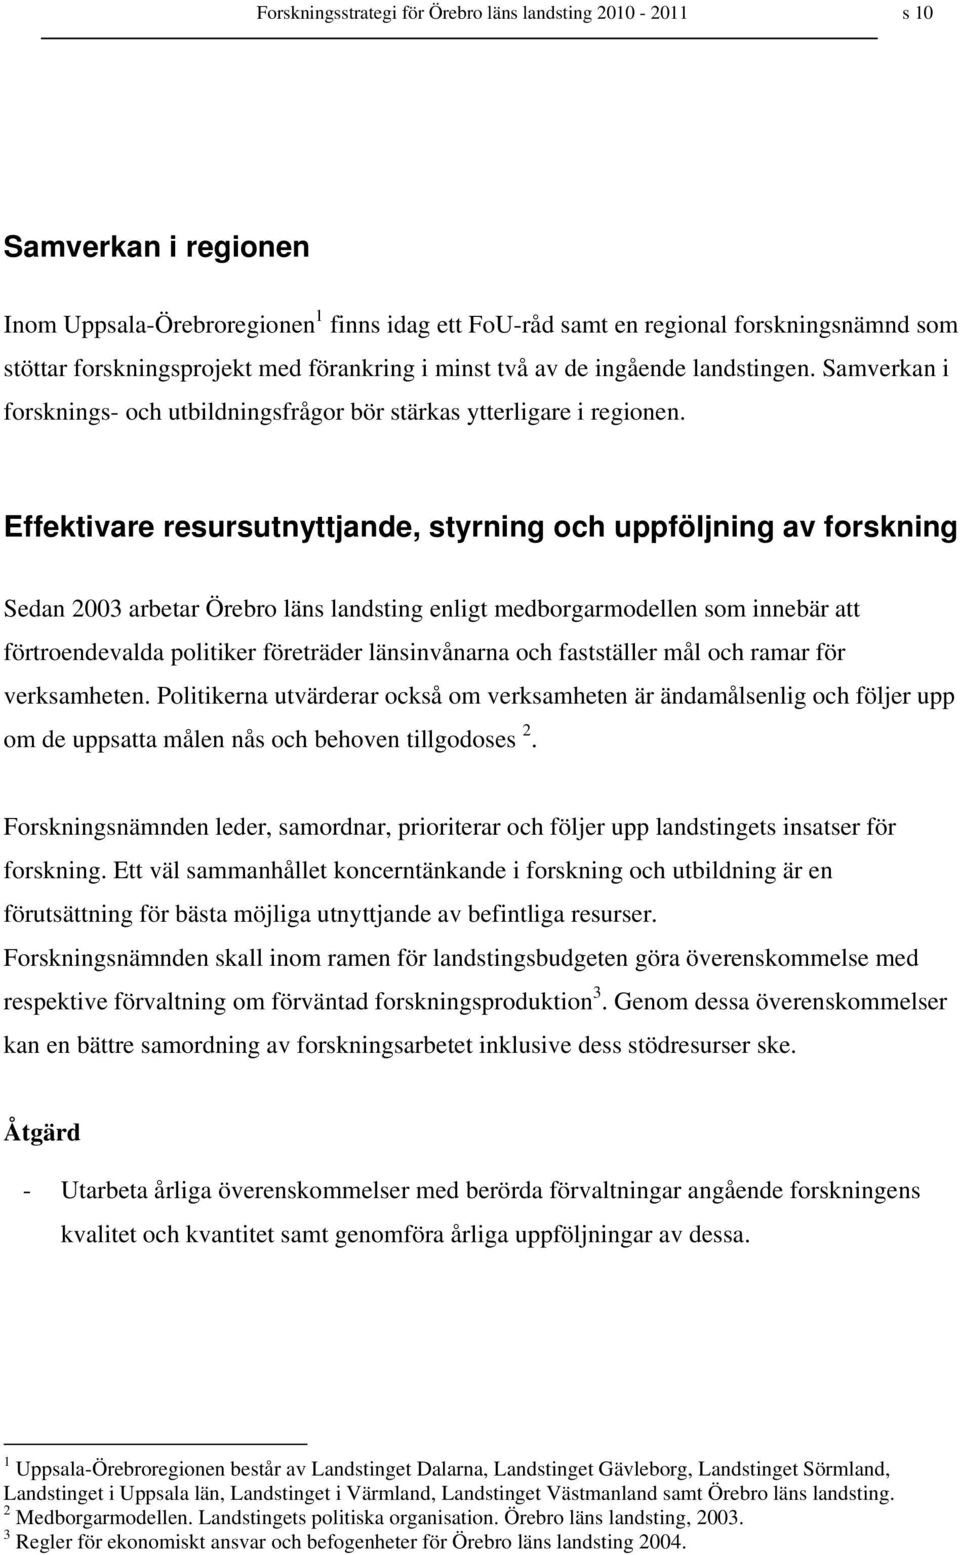 Effektivare resursutnyttjande, styrning och uppföljning av forskning Sedan 2003 arbetar Örebro läns landsting enligt medborgarmodellen som innebär att förtroendevalda politiker företräder